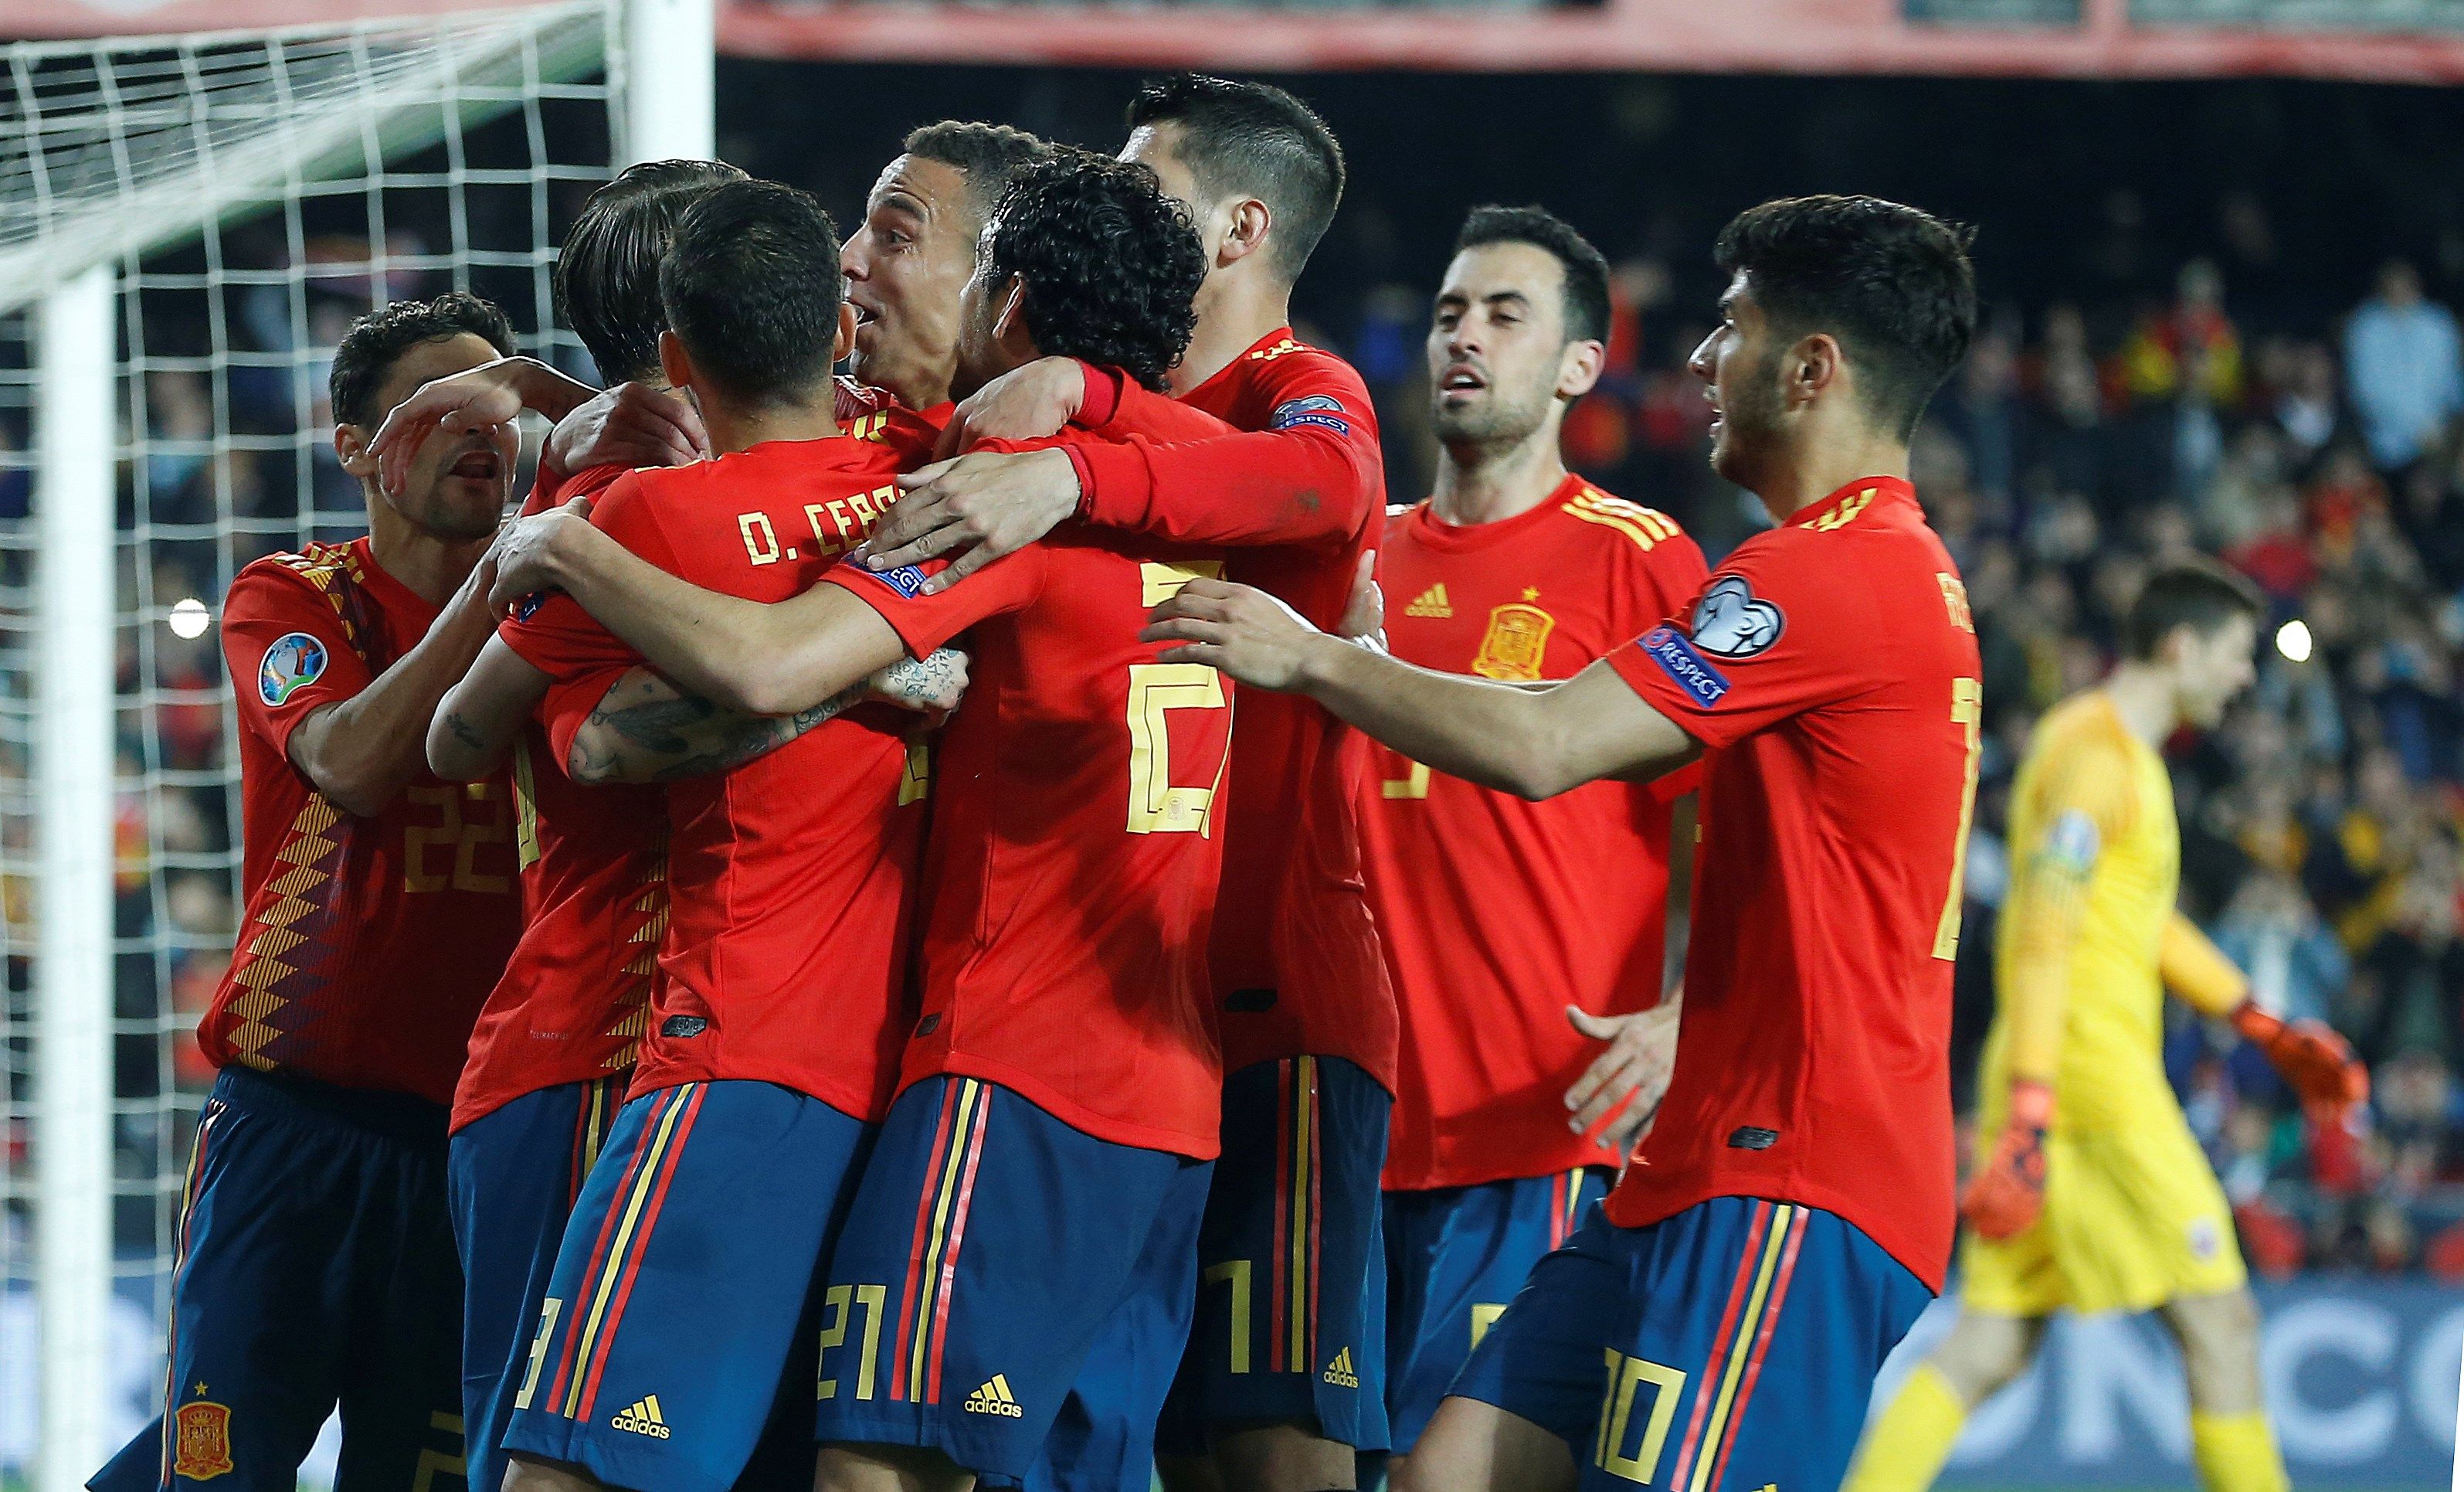 Los jugadores de la selección española celebran el segundo gol del combinado español. (Foto Prensa Libre: EFE)